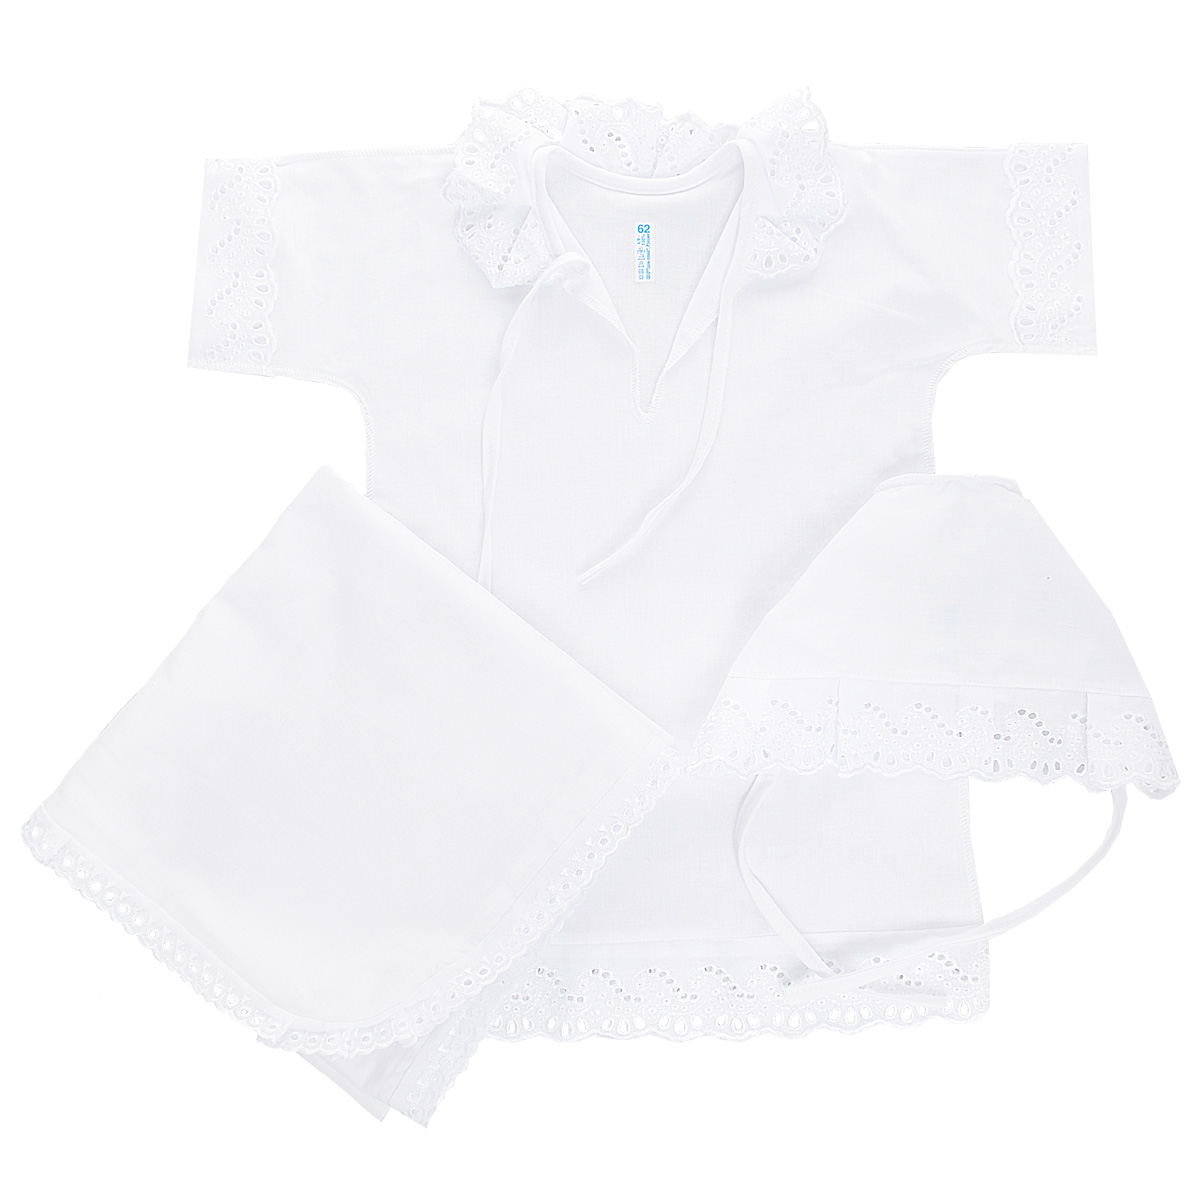 Комплект для крещения детский Трон-плюс: рубашка, чепчик, пеленка, цвет: белый. 1417. Размер 68, 6 месяцев